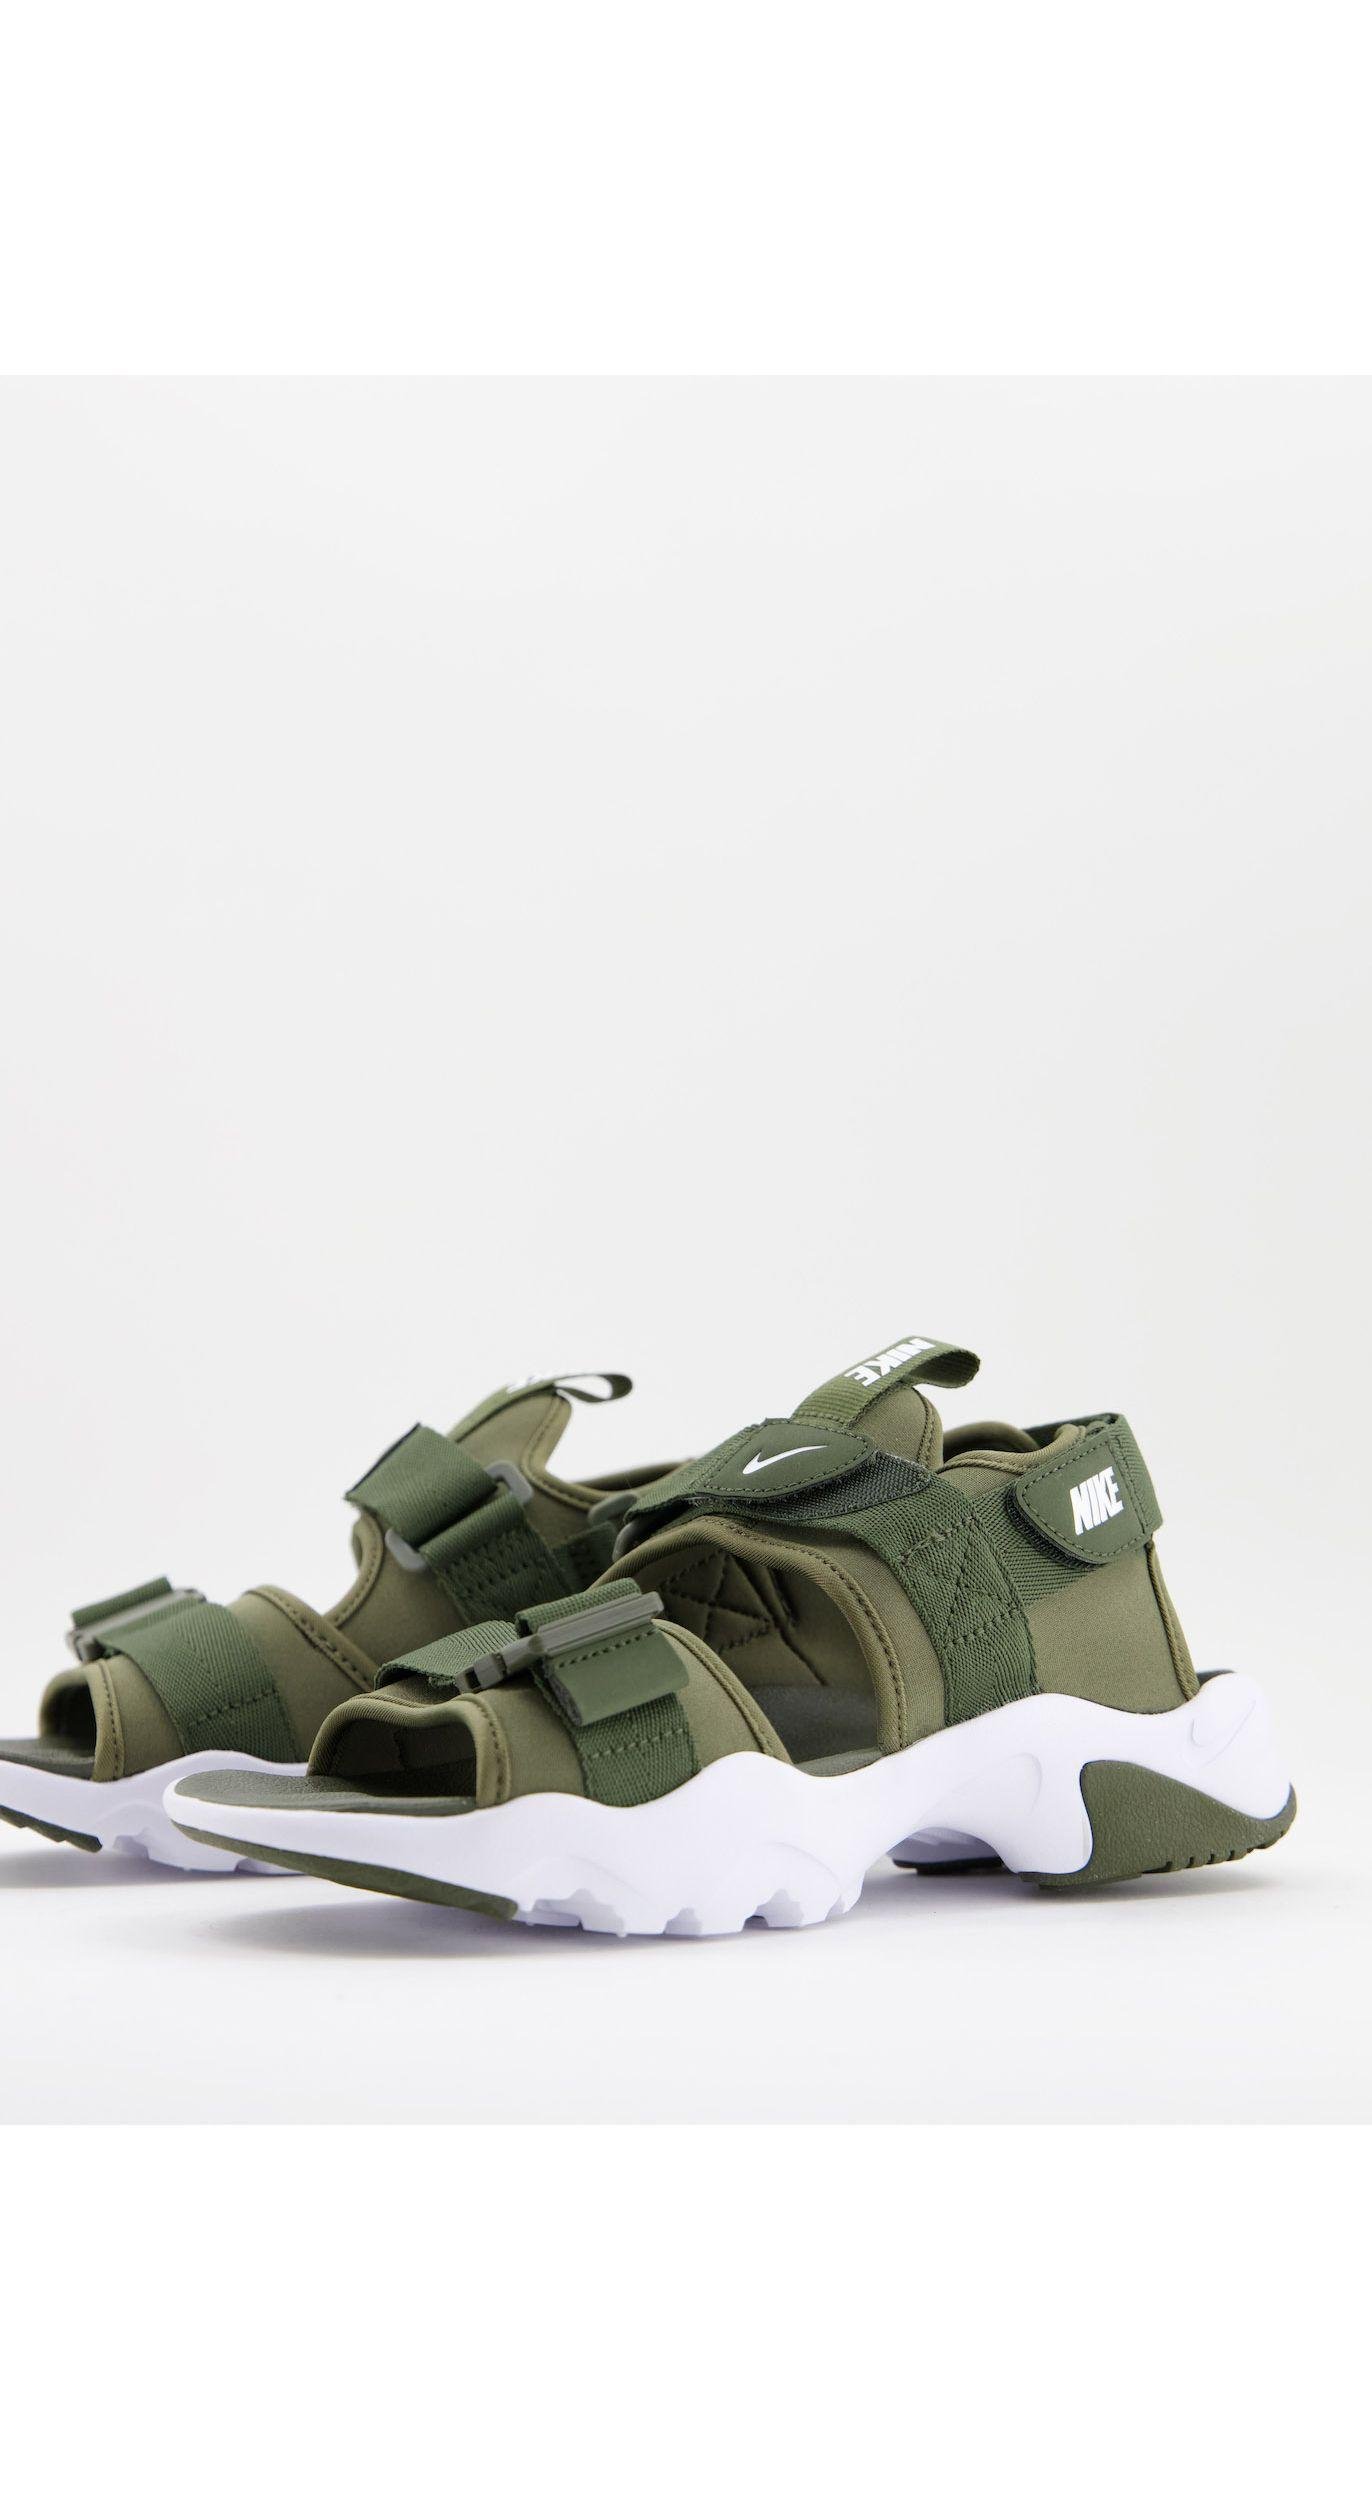 Afbreken De neiging hebben poort Nike Canyon Hiking - Sneaker-sandalen in het Groen voor heren | Lyst NL